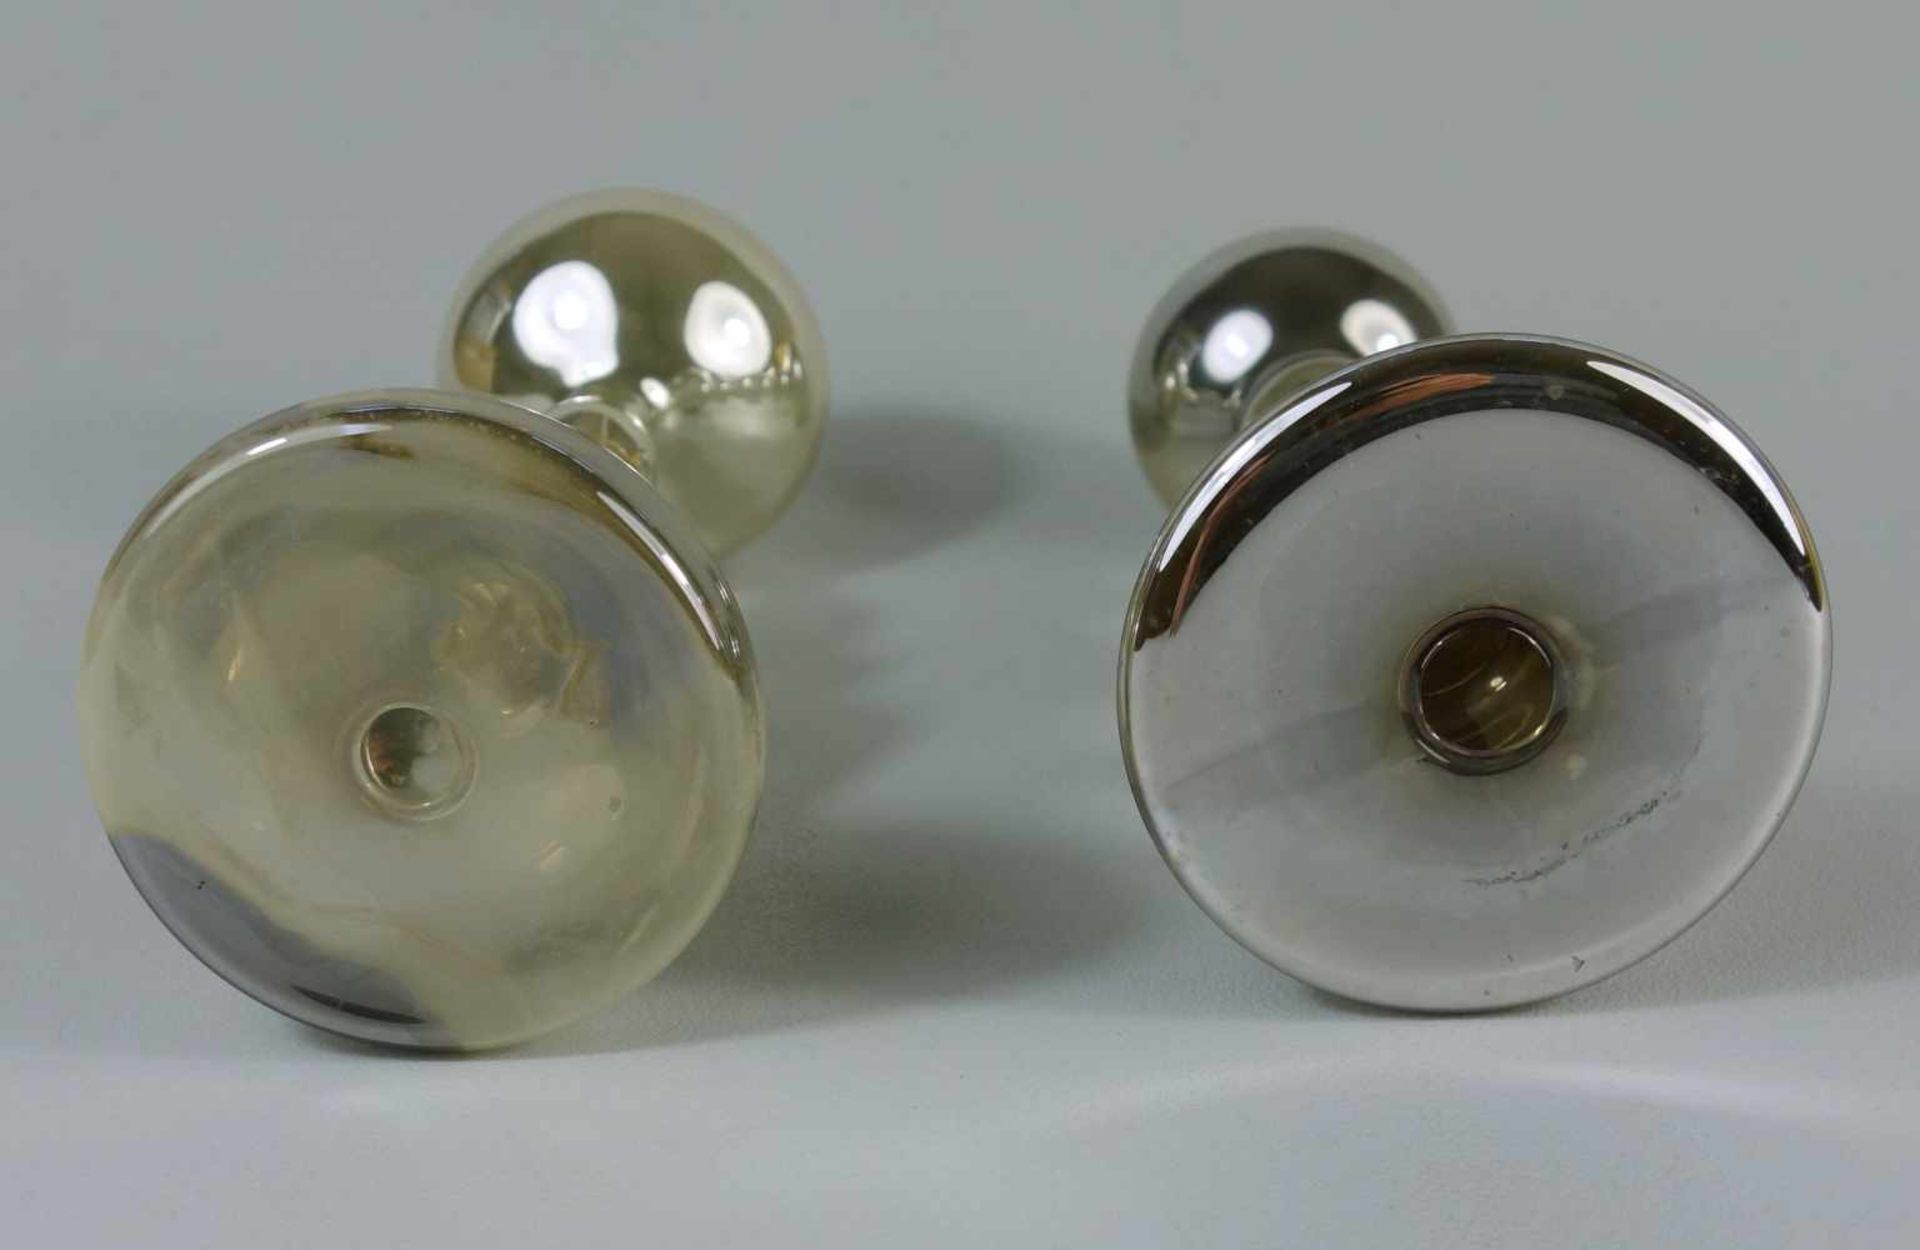 2 Kerzenleucher, Bauernsilber, wohl 19. Jh.Klarglas innen mit Silber bedampft, gewölbter Stand, - Bild 2 aus 2